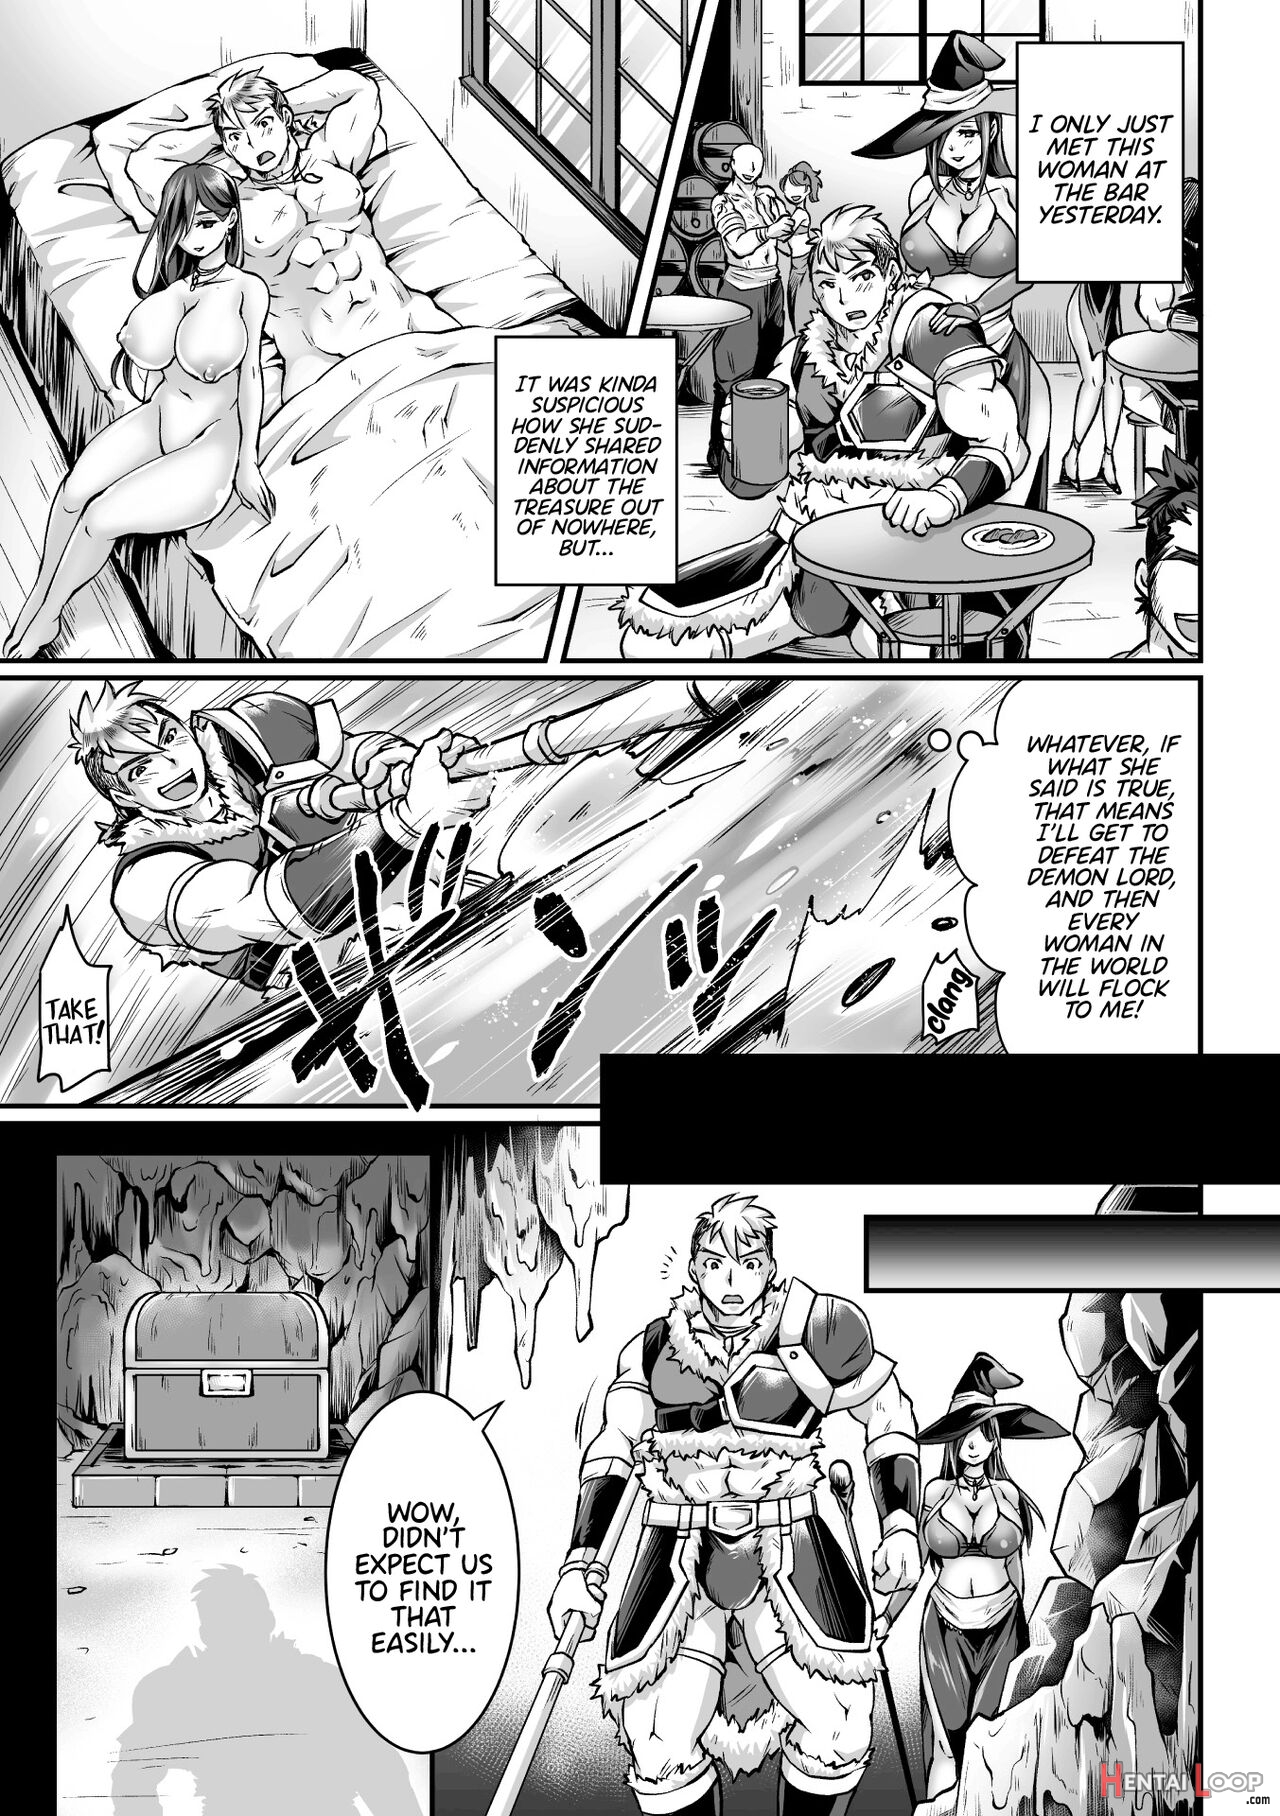 2d Comic Magazine Mesu Ochi! Ts Ero Trap Dungeon Vol. 2 page 25